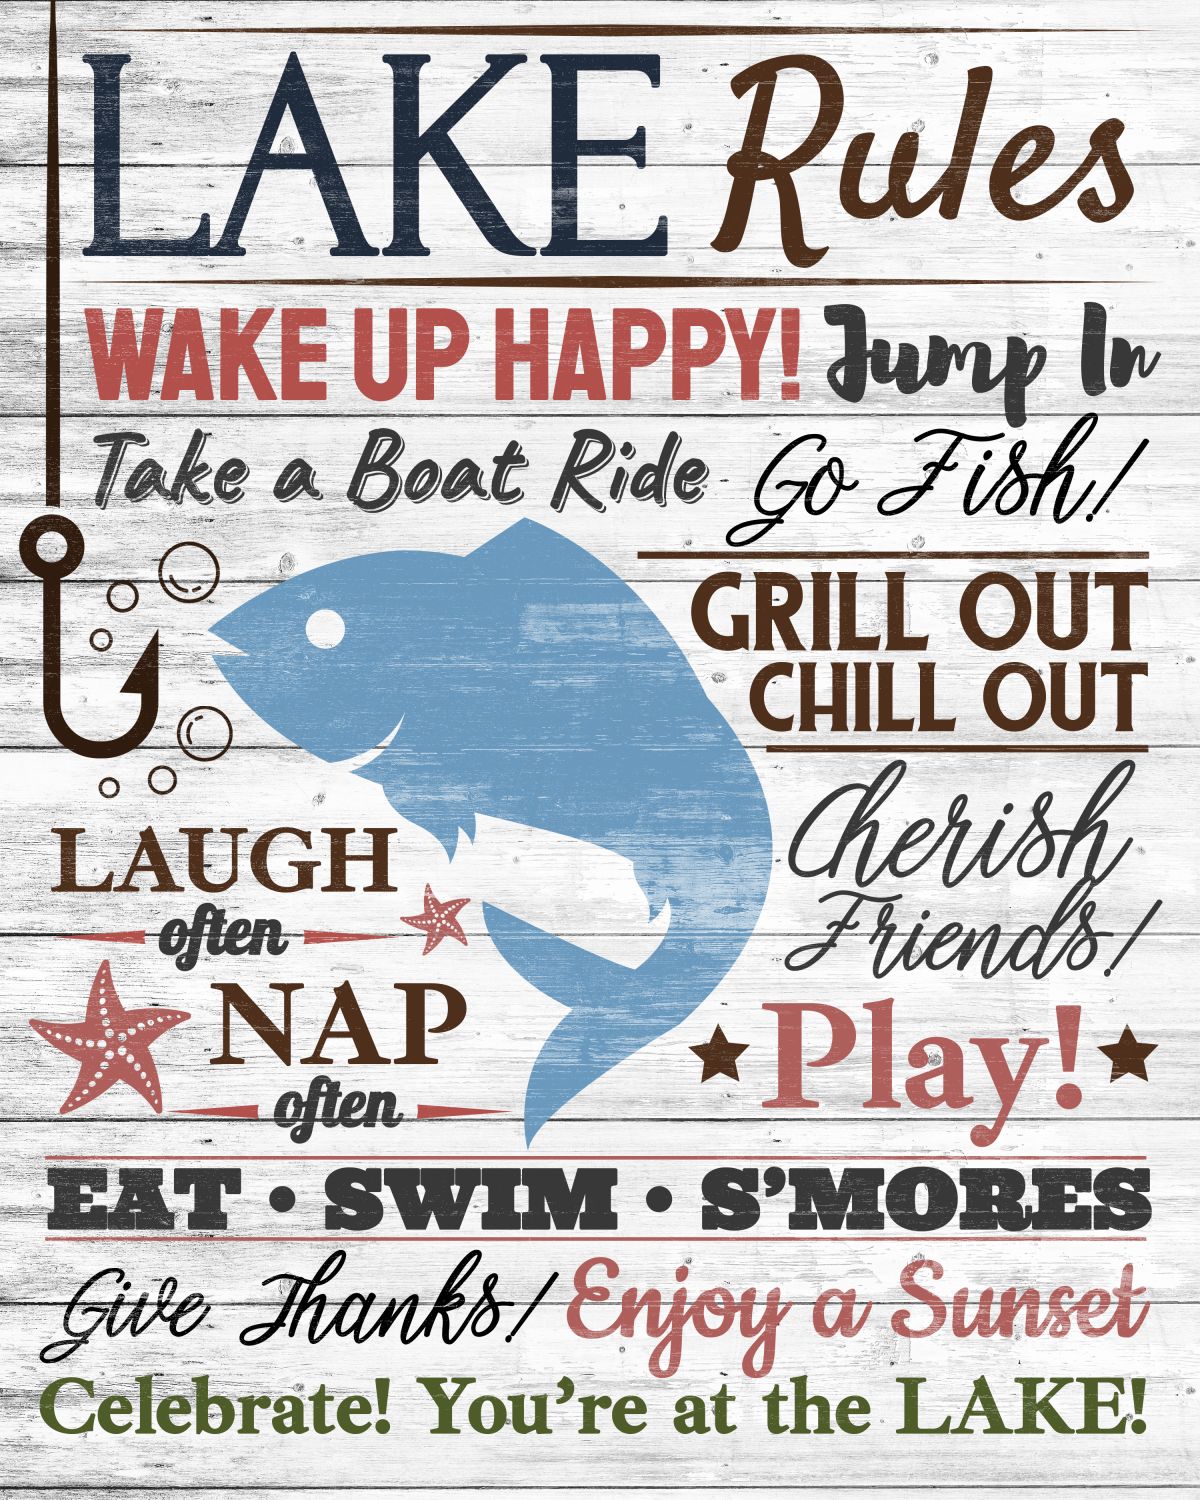 Fun Lake Rules